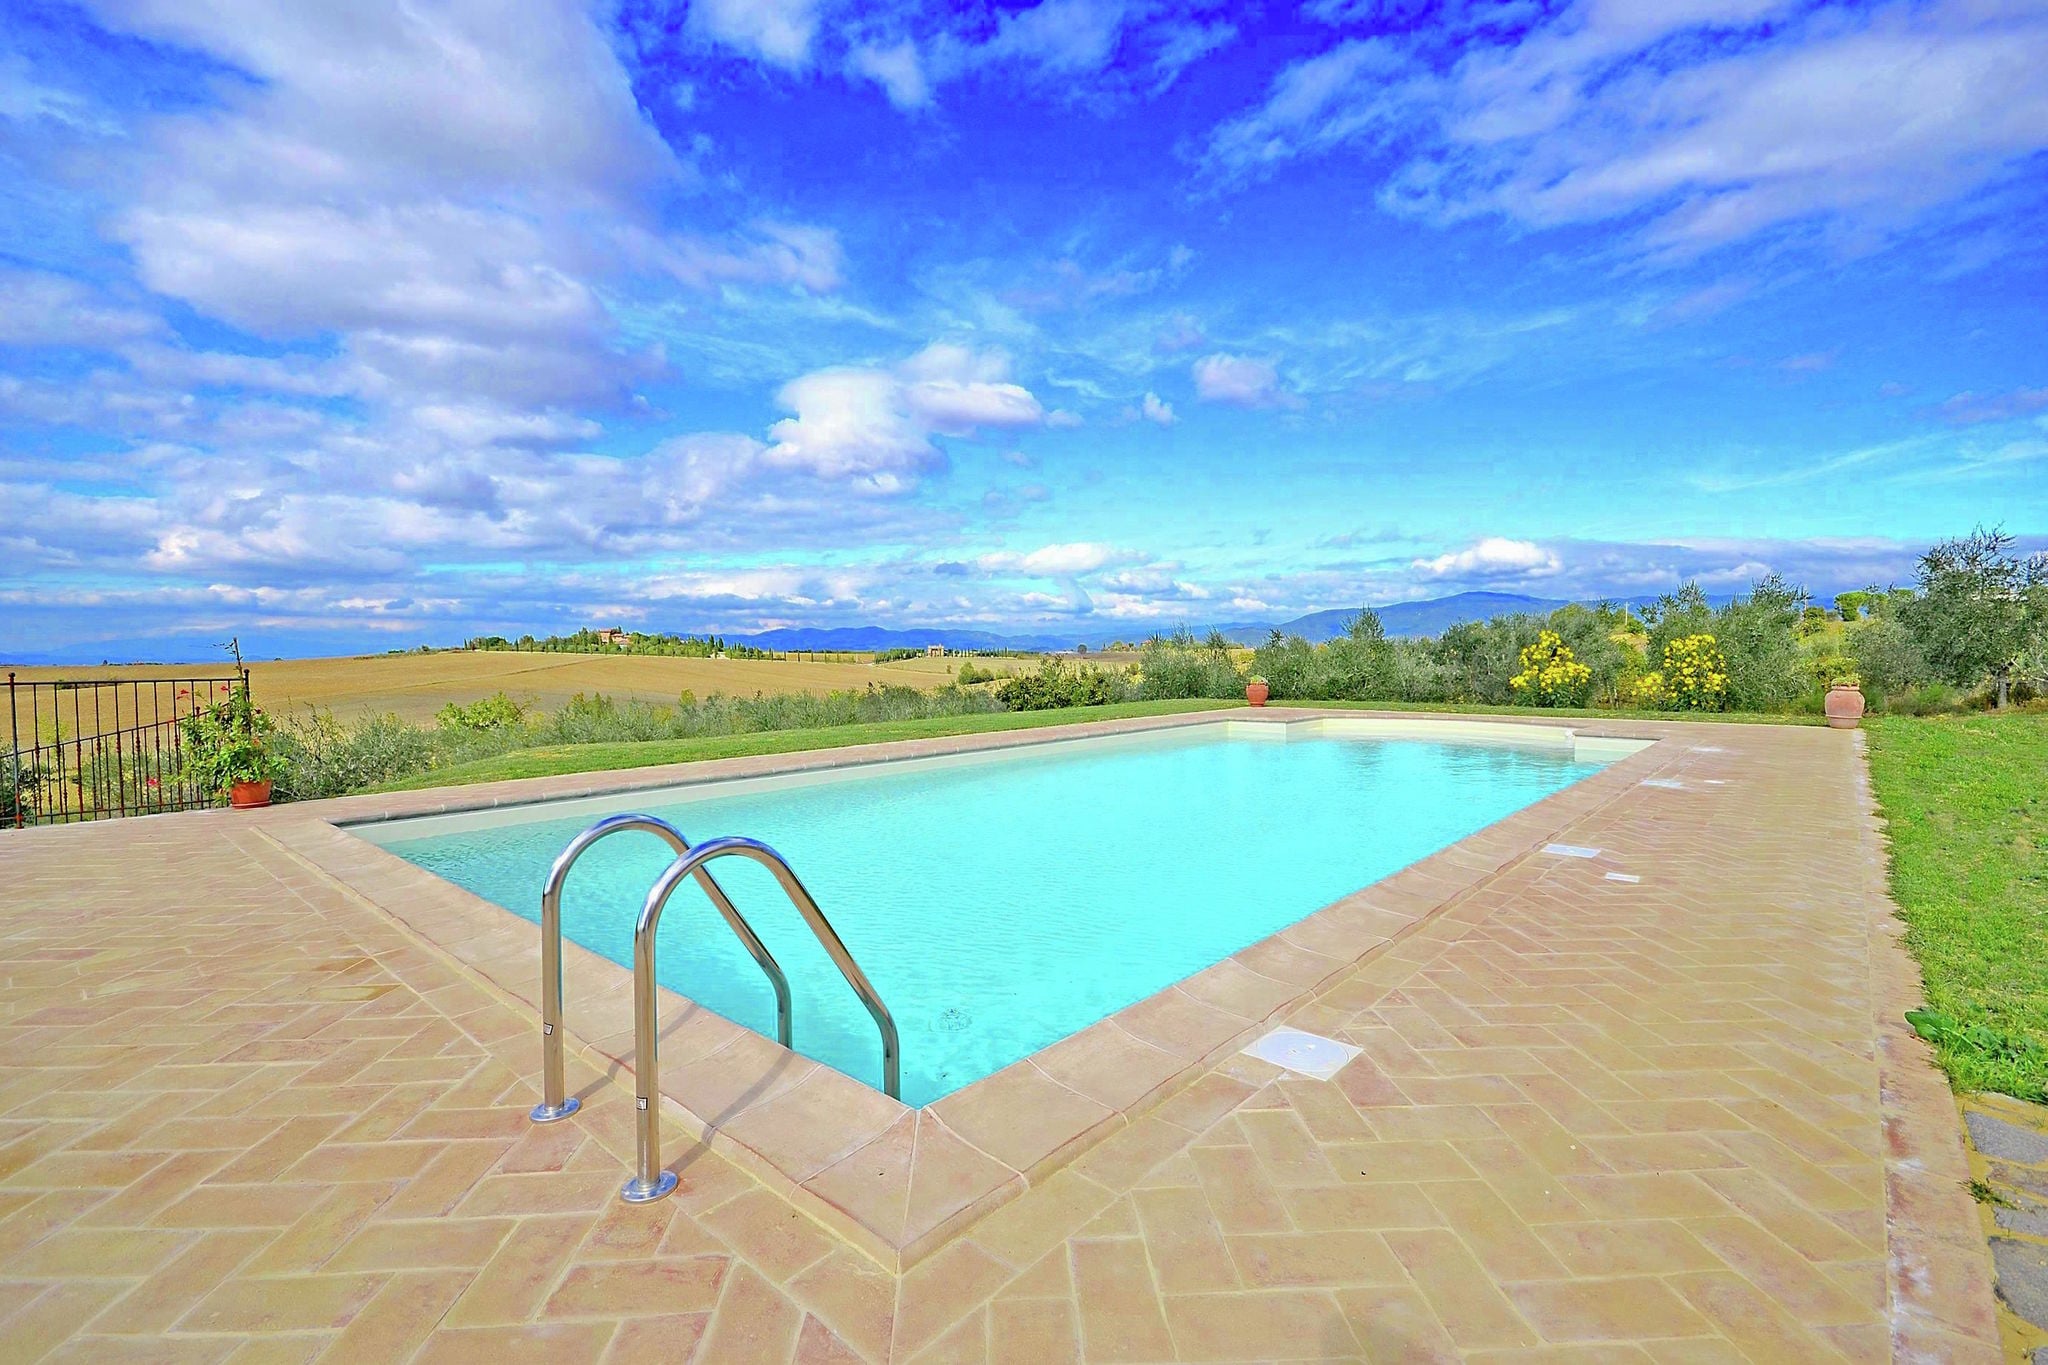 Villa met privézwembad in de heuvels, dichtbij Cortona, prachtige omgeving